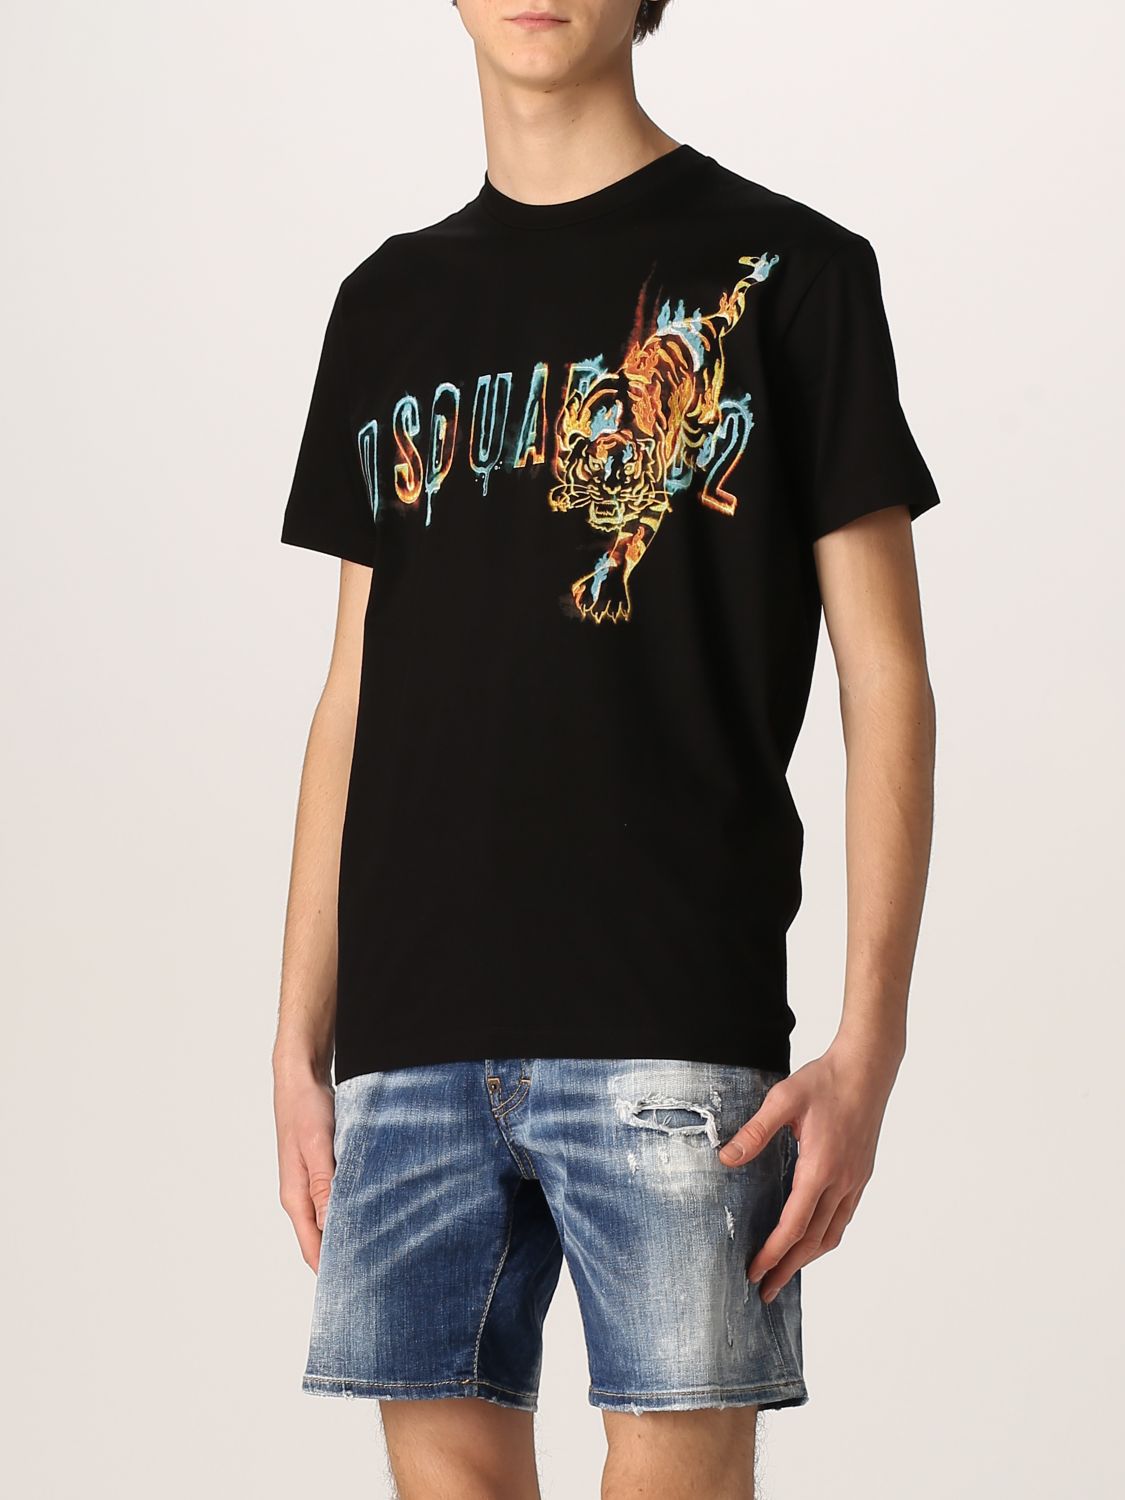 DSQUARED2 T-shirts メンズ 人気の新作